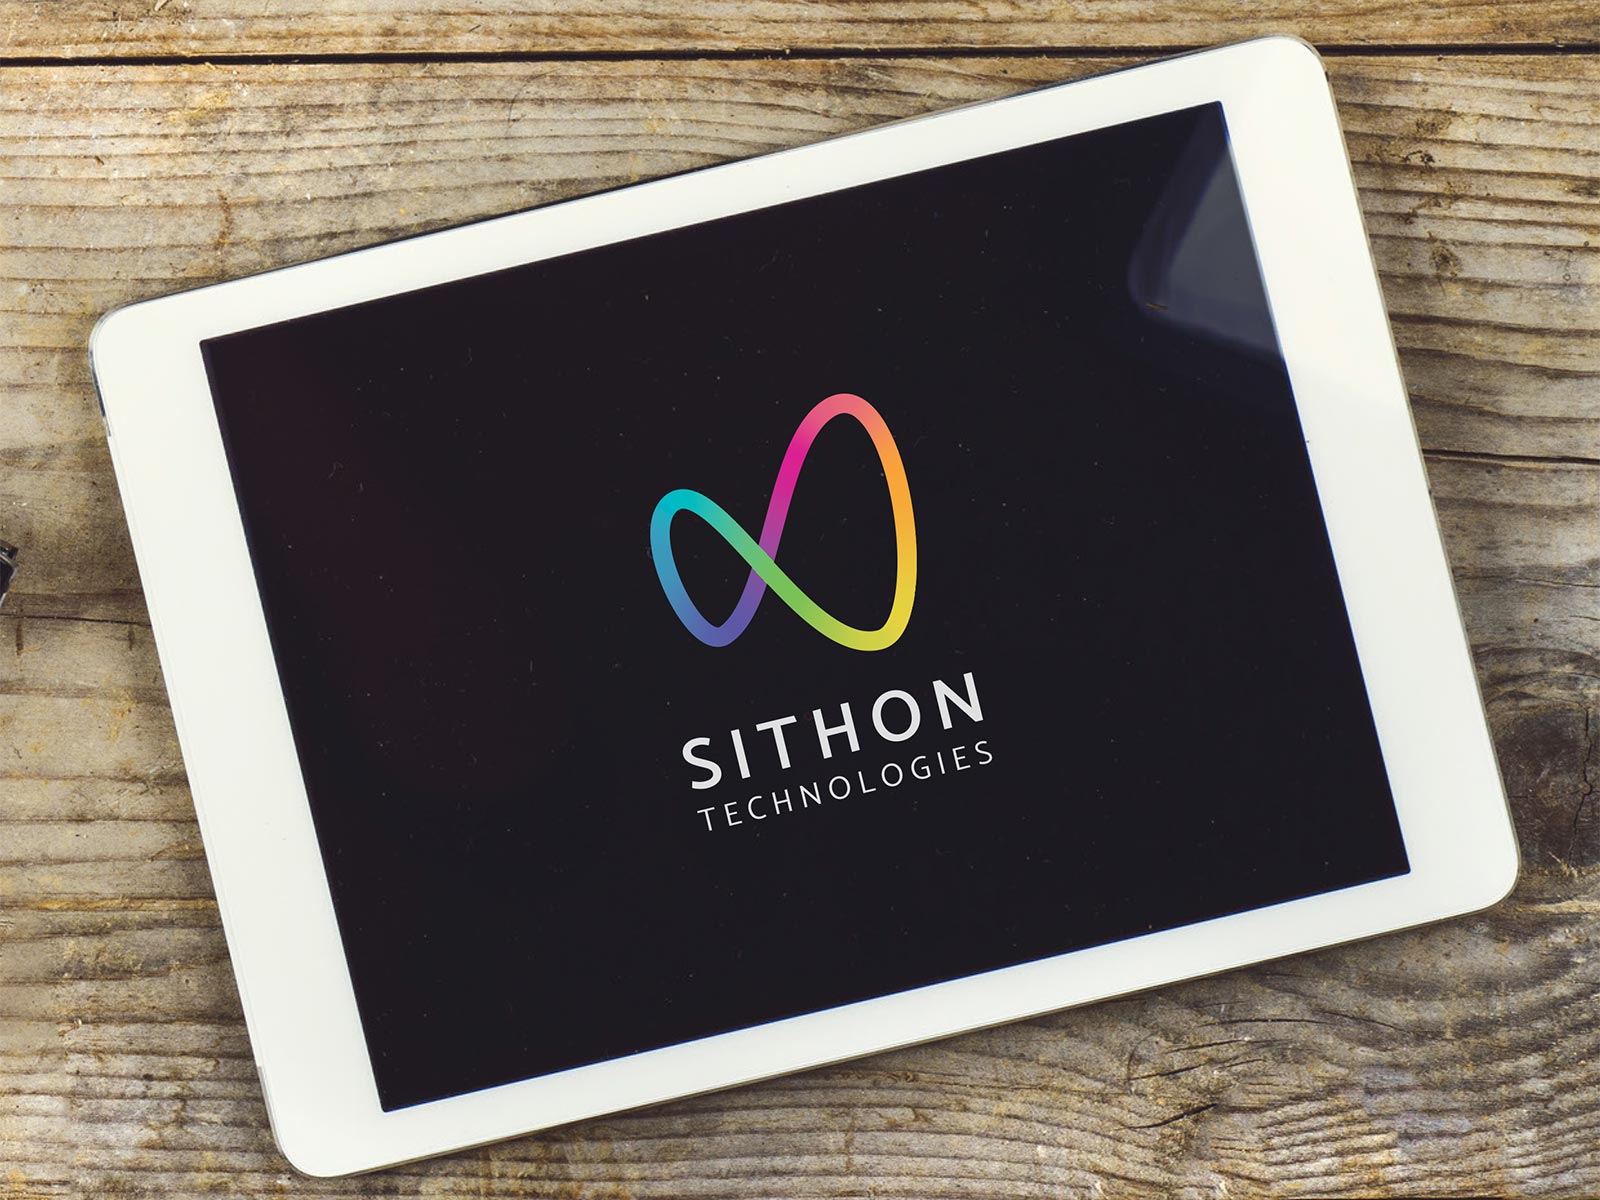 logo sithon technologies